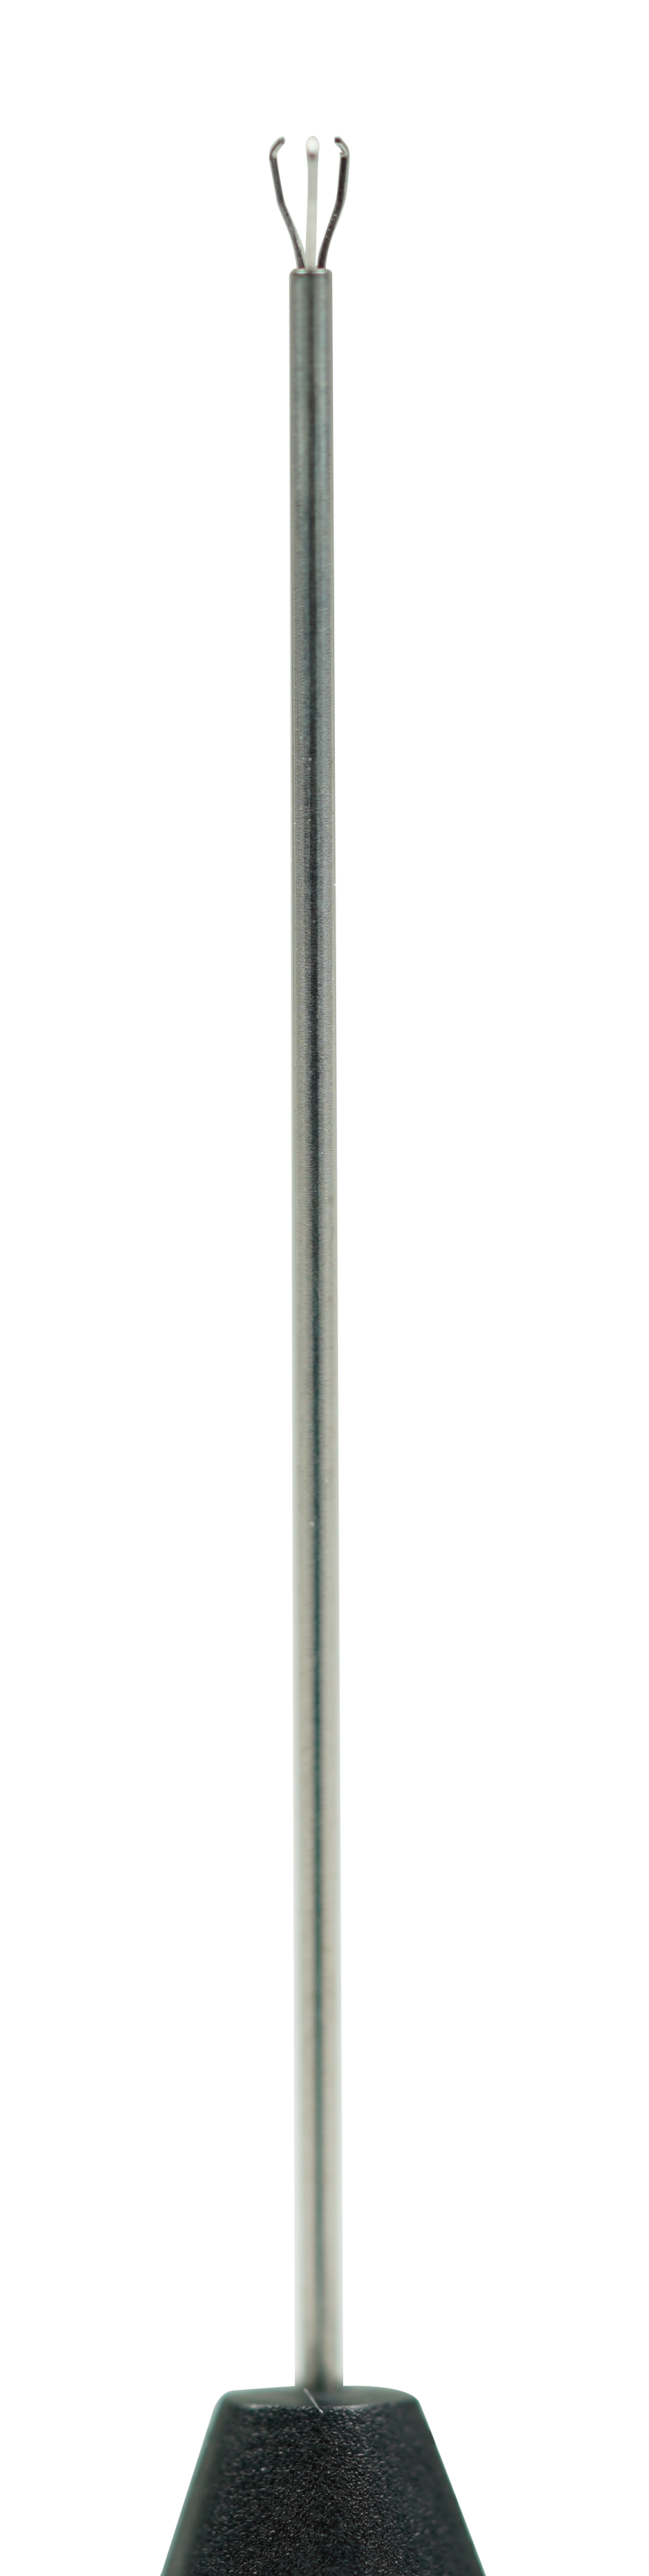 UN-3012(23G) Stainless Steel Triangular Gripping Forceps